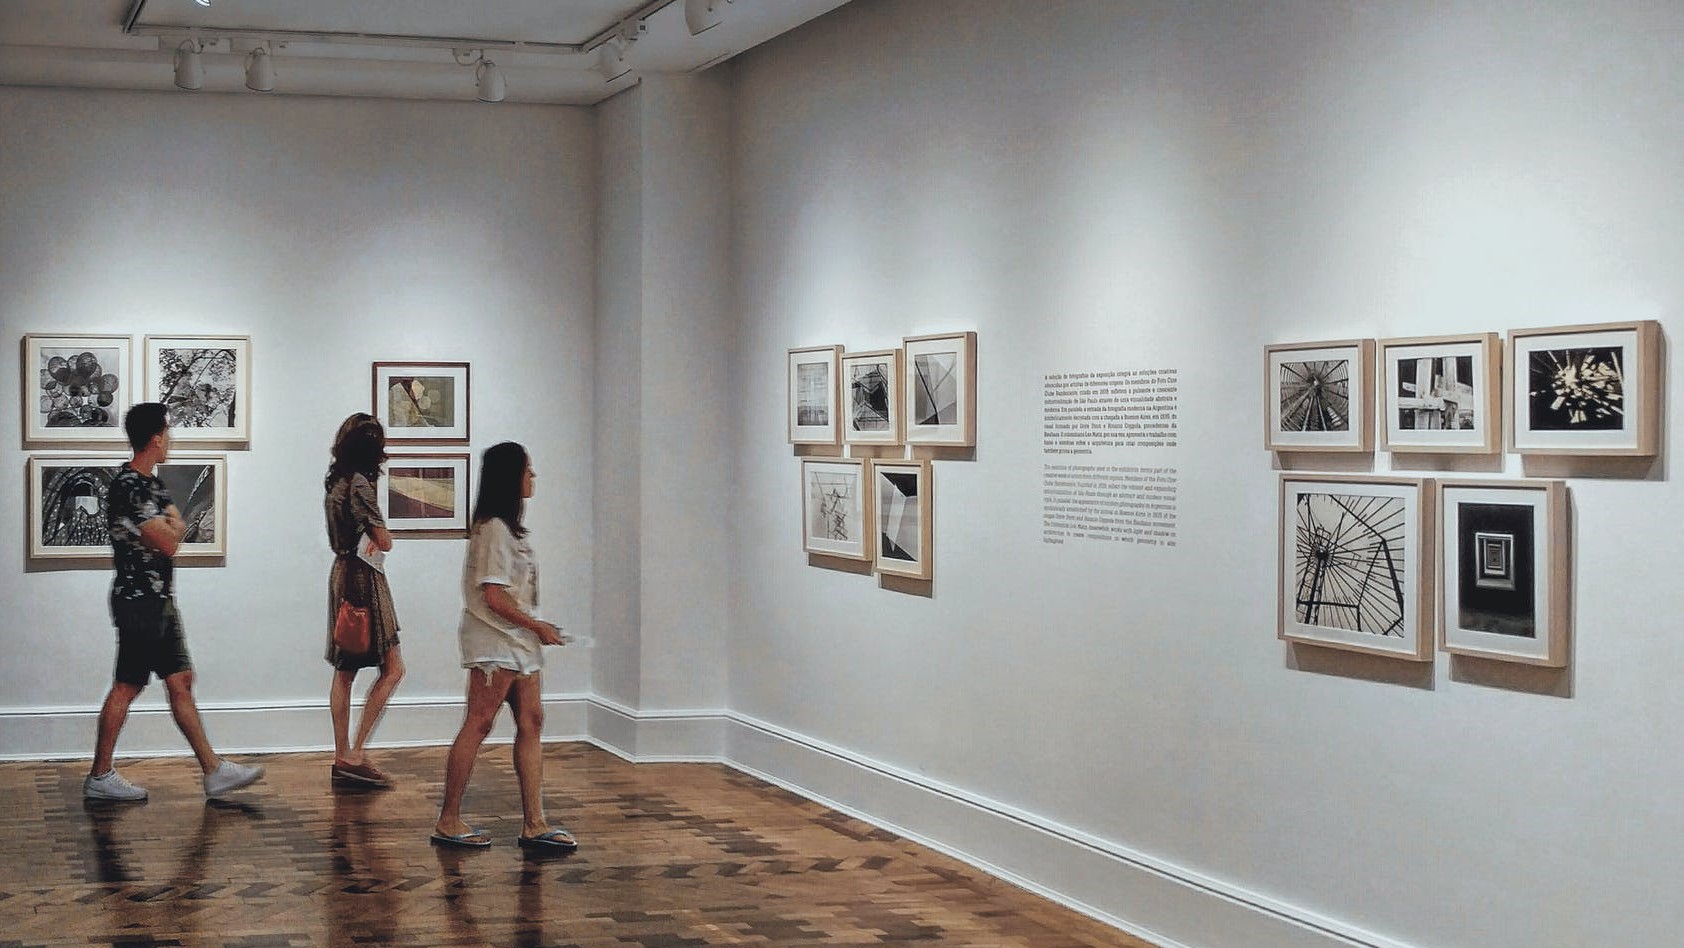 画廊内，三位观众正在欣赏墙上挂着的黑白摄影作品。展厅宽敞明亮，墙壁白色，地板木质。